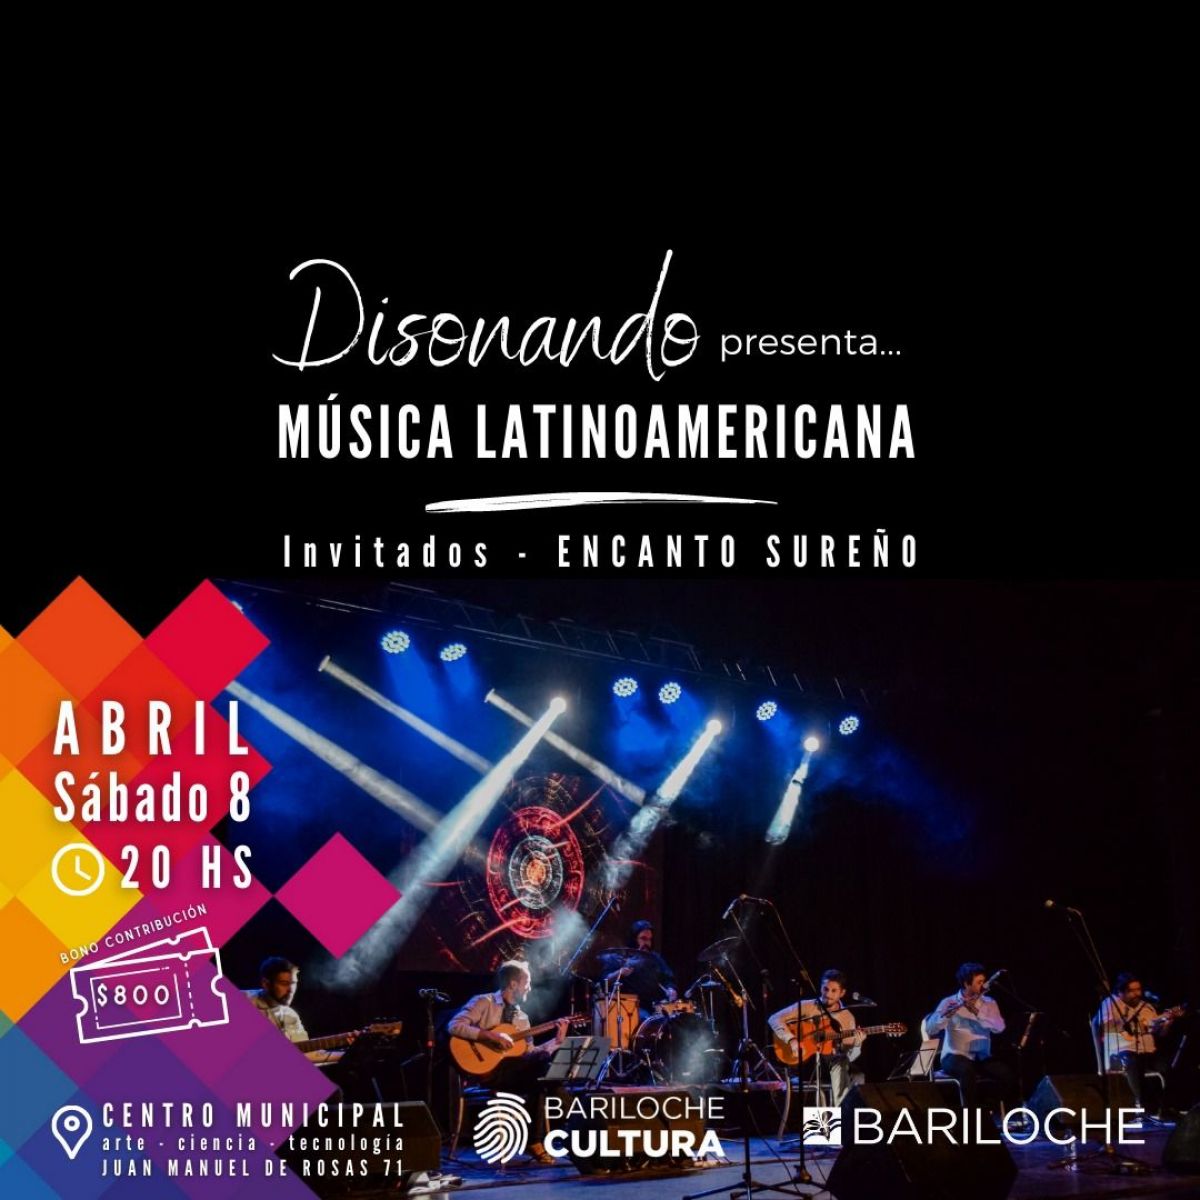 Sábado 8: Disonando, Música Latinoamericana con Encanto Sureño como invitados